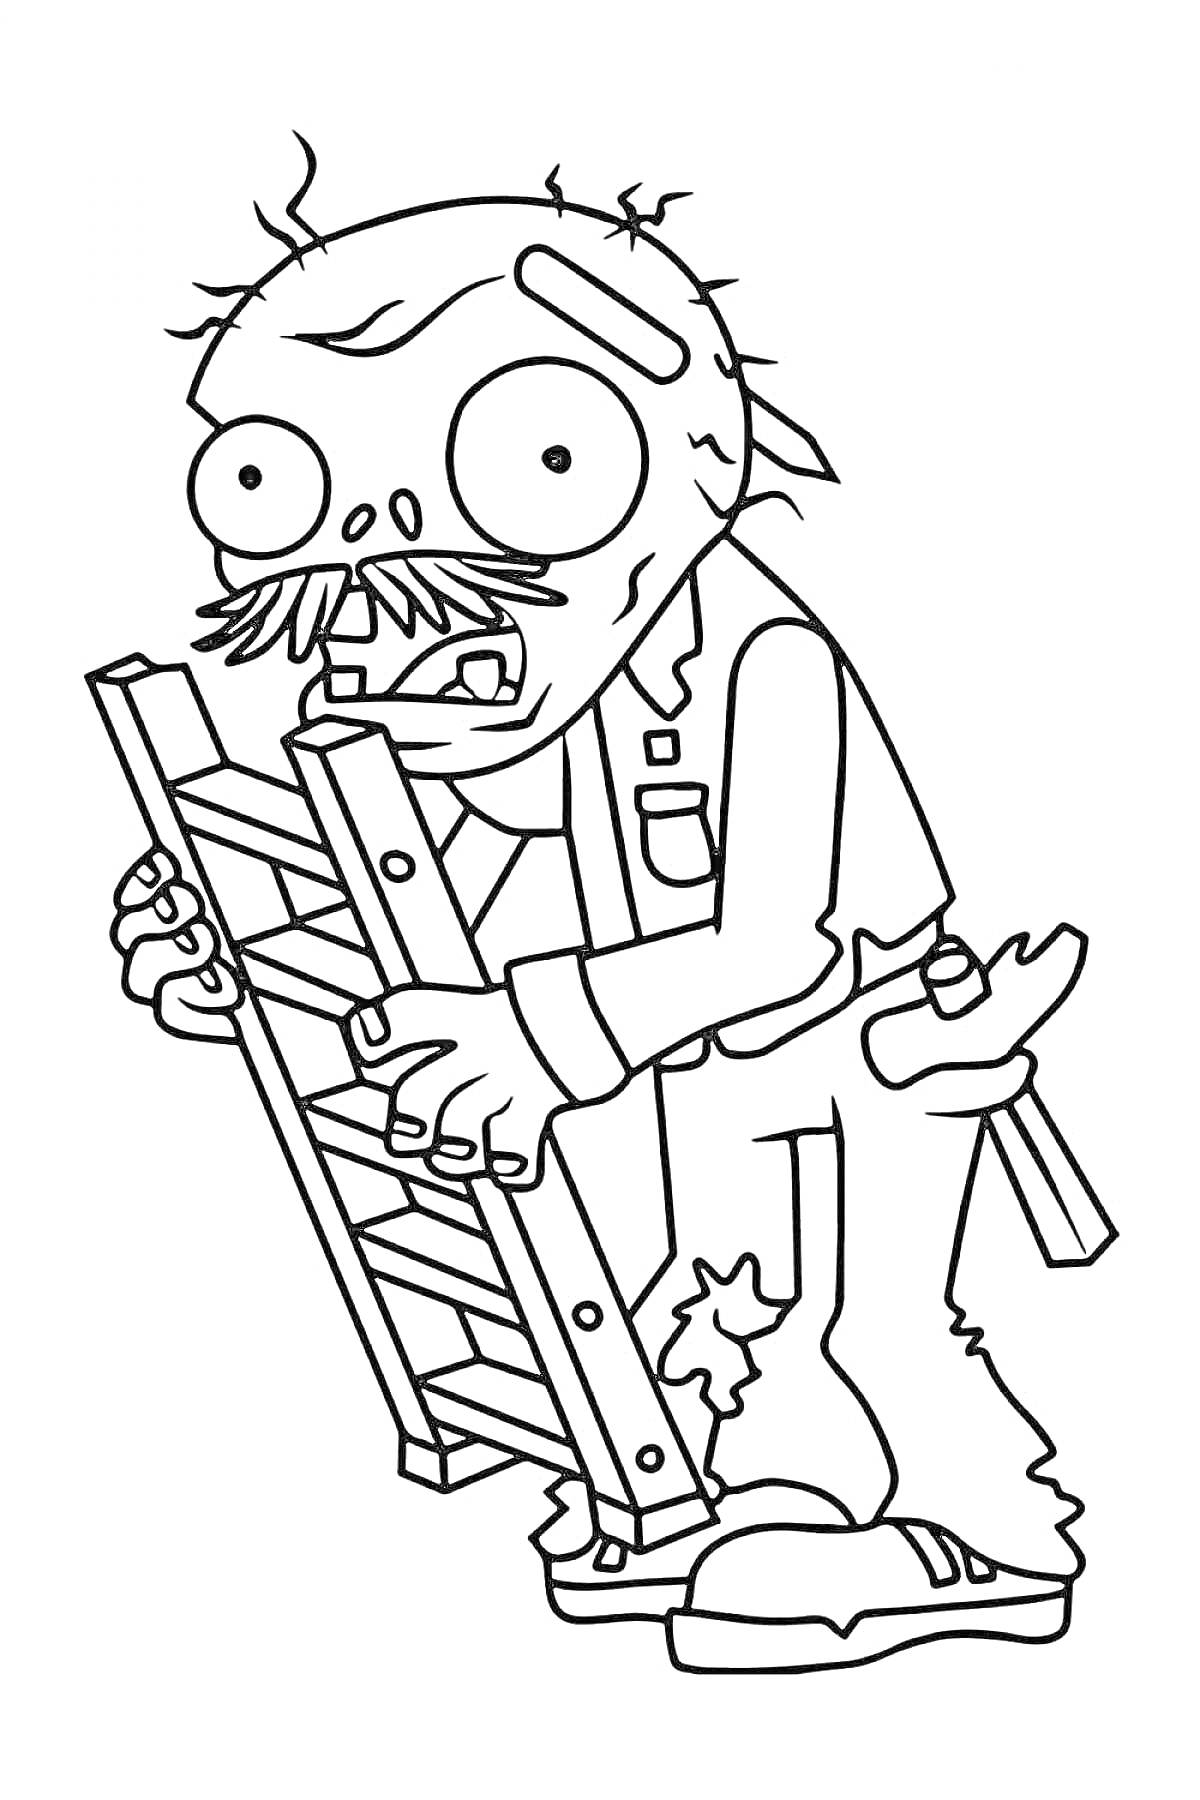 Раскраска Зомби с лестницей и инструментами